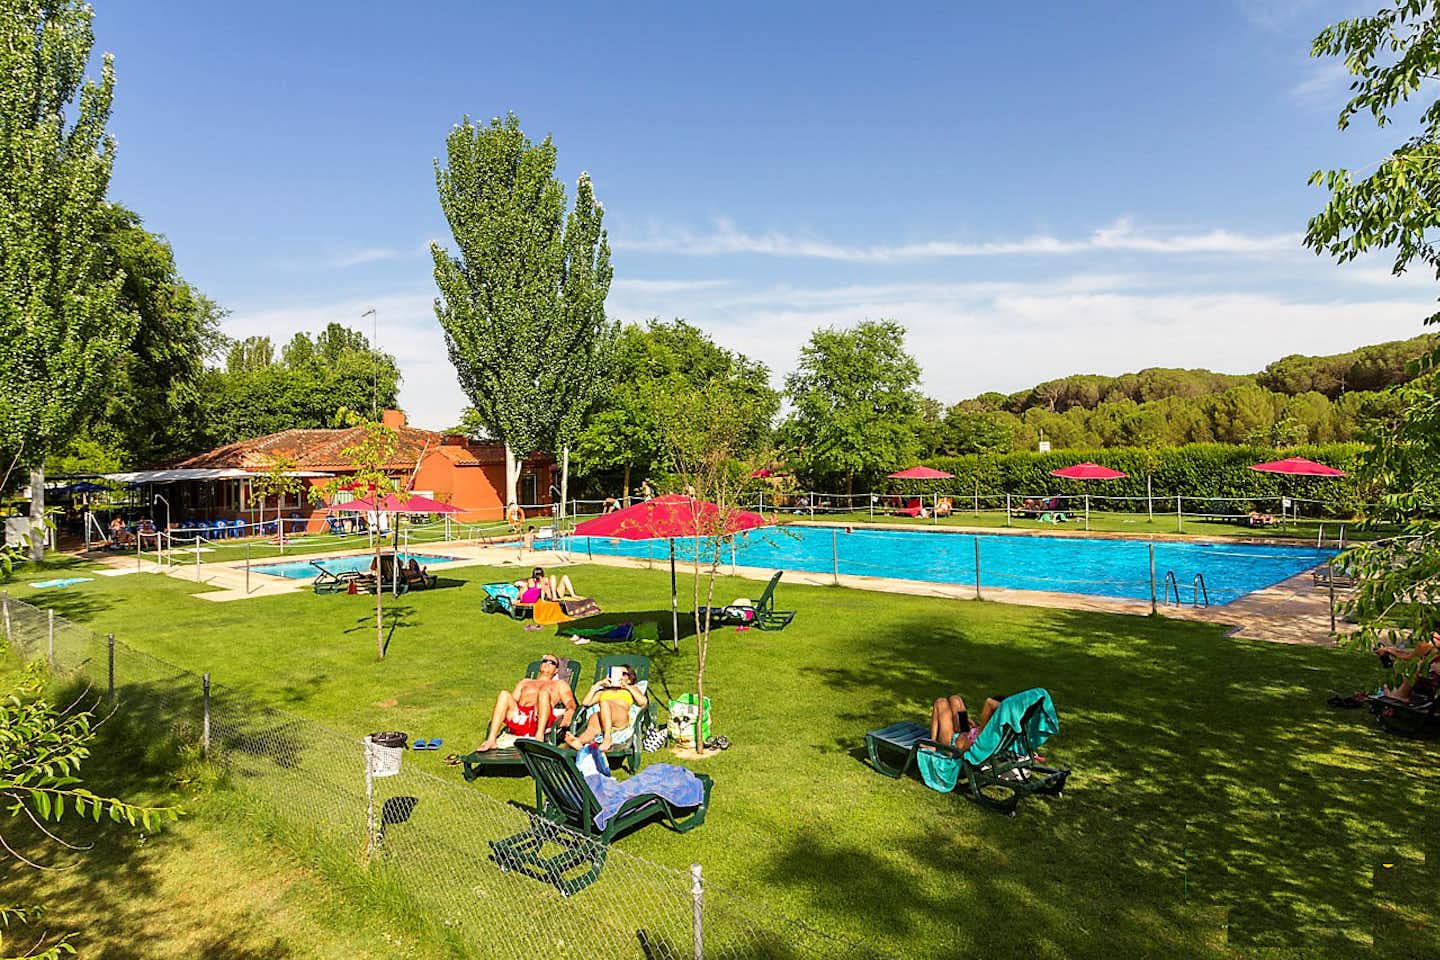 Campingred El Astral  -  Camper am Pool vom Campingplatz mit Sonnenschirmen und Liegestühlen auf grüner Wiese